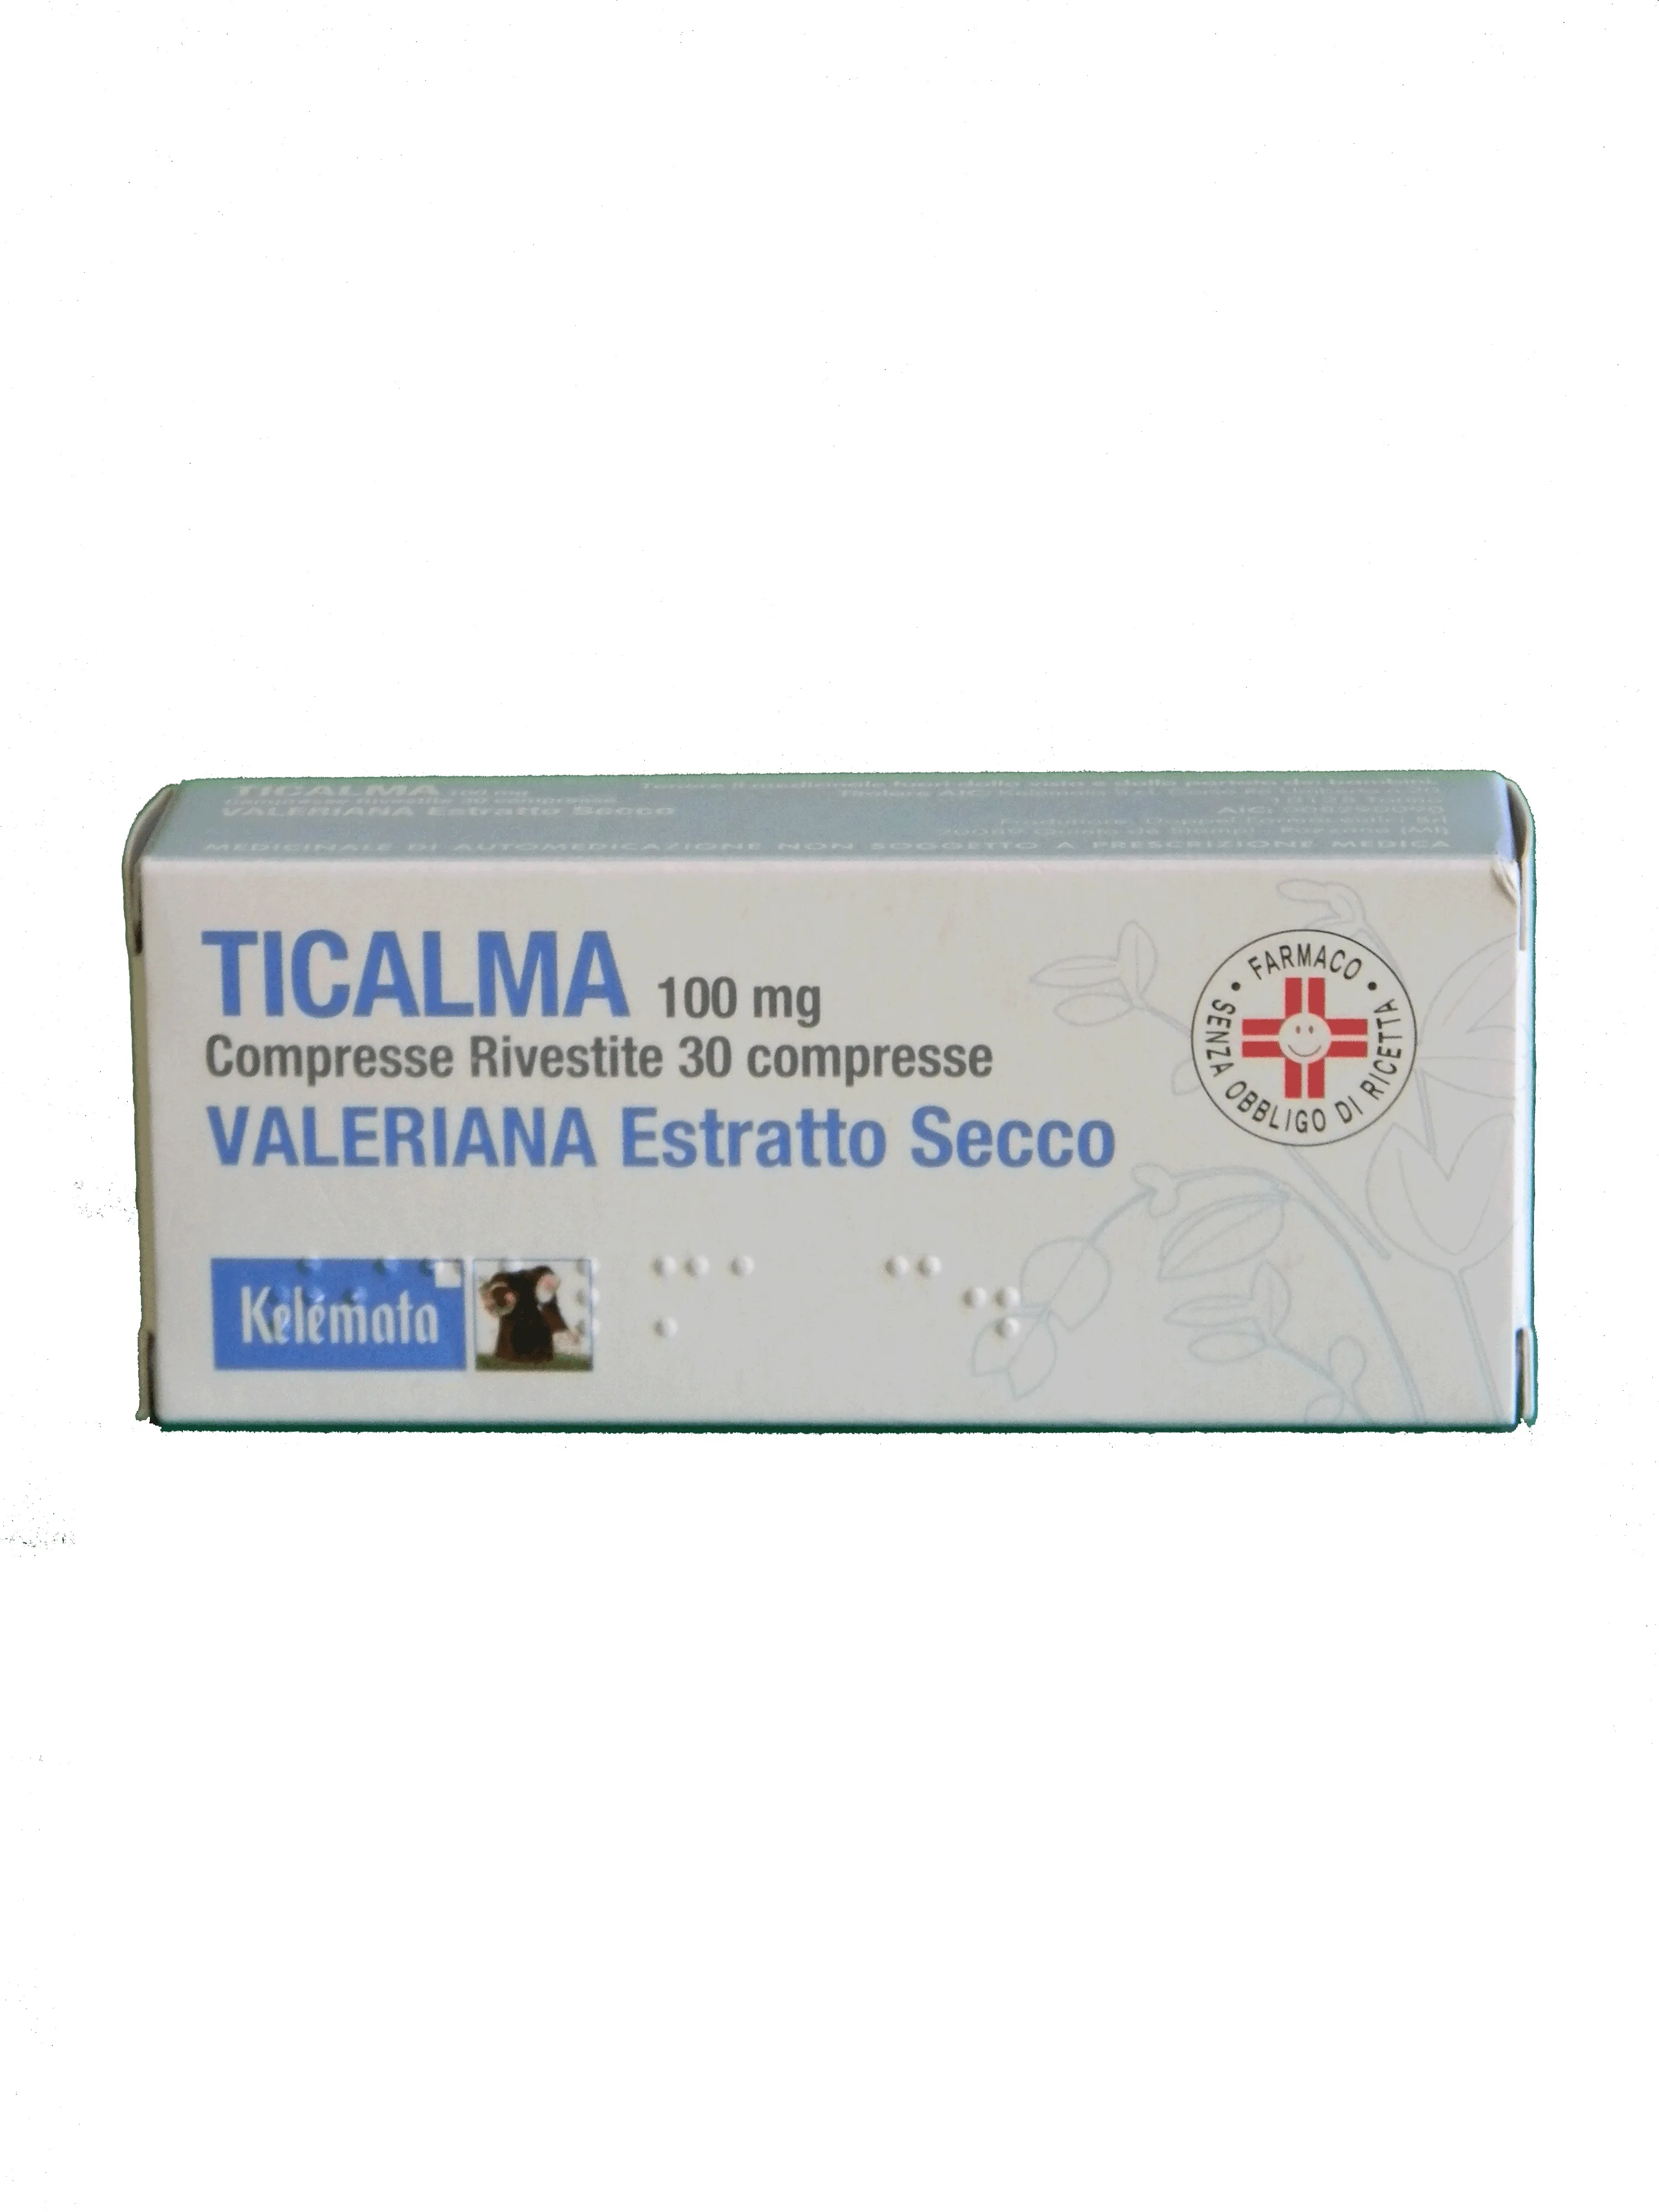 TiCalma Compresse 100 mg 30 Compresse Rivestite